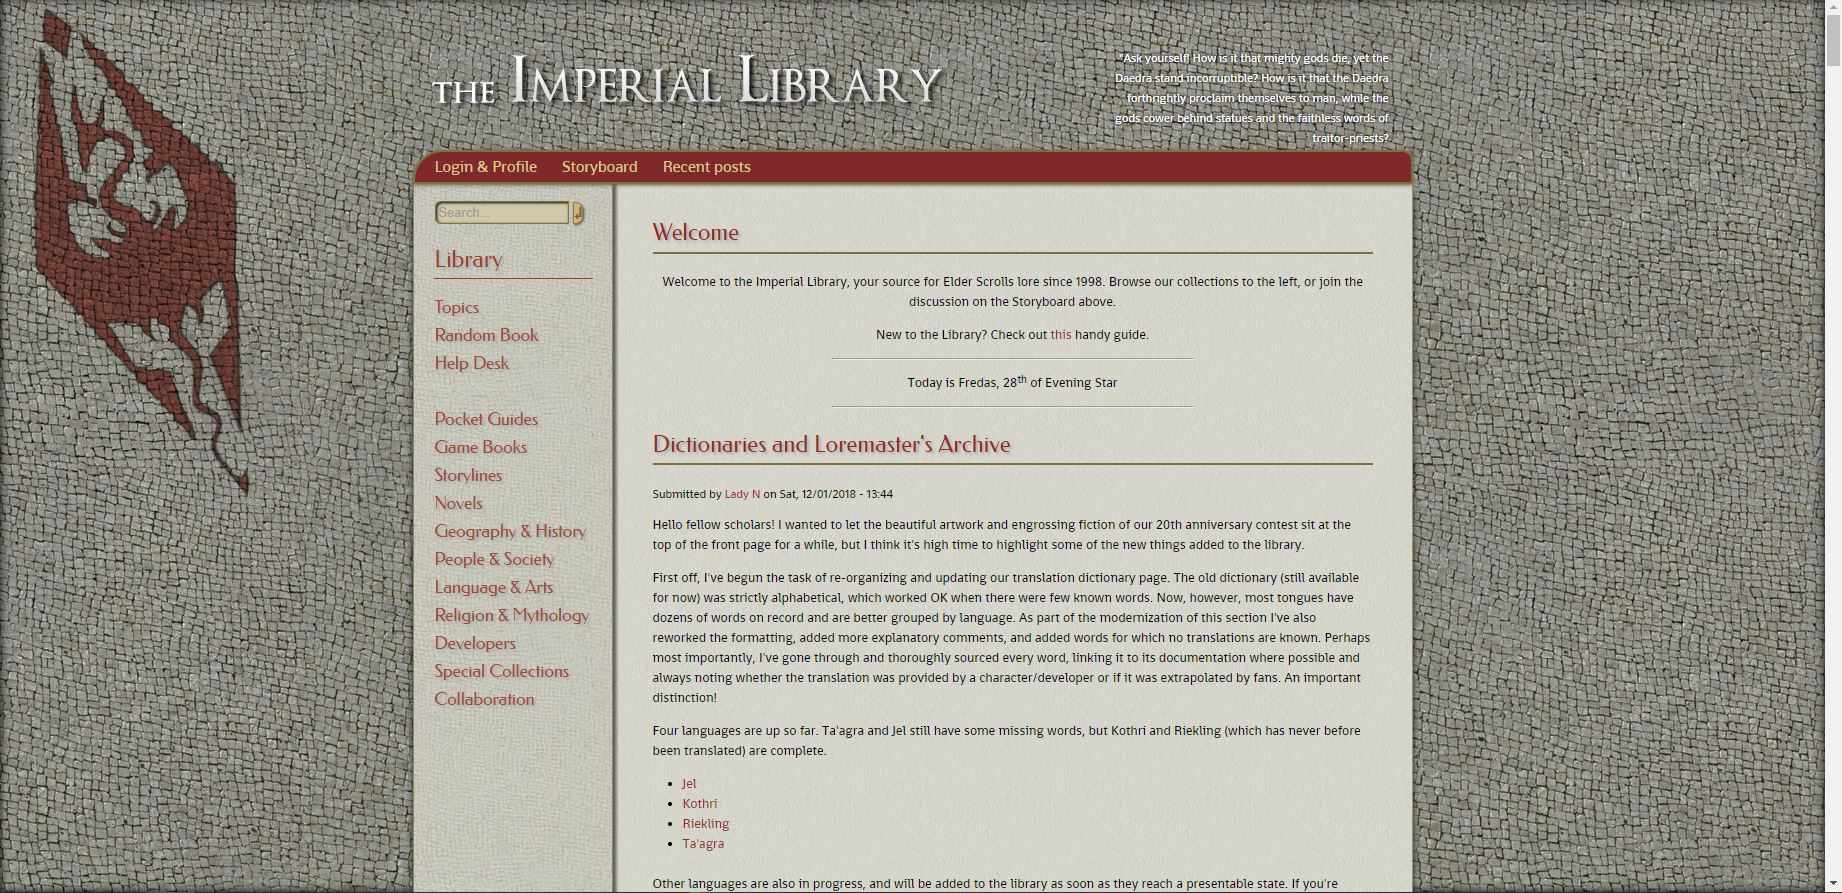 Online:Little Leaf - The Unofficial Elder Scrolls Pages (UESP)